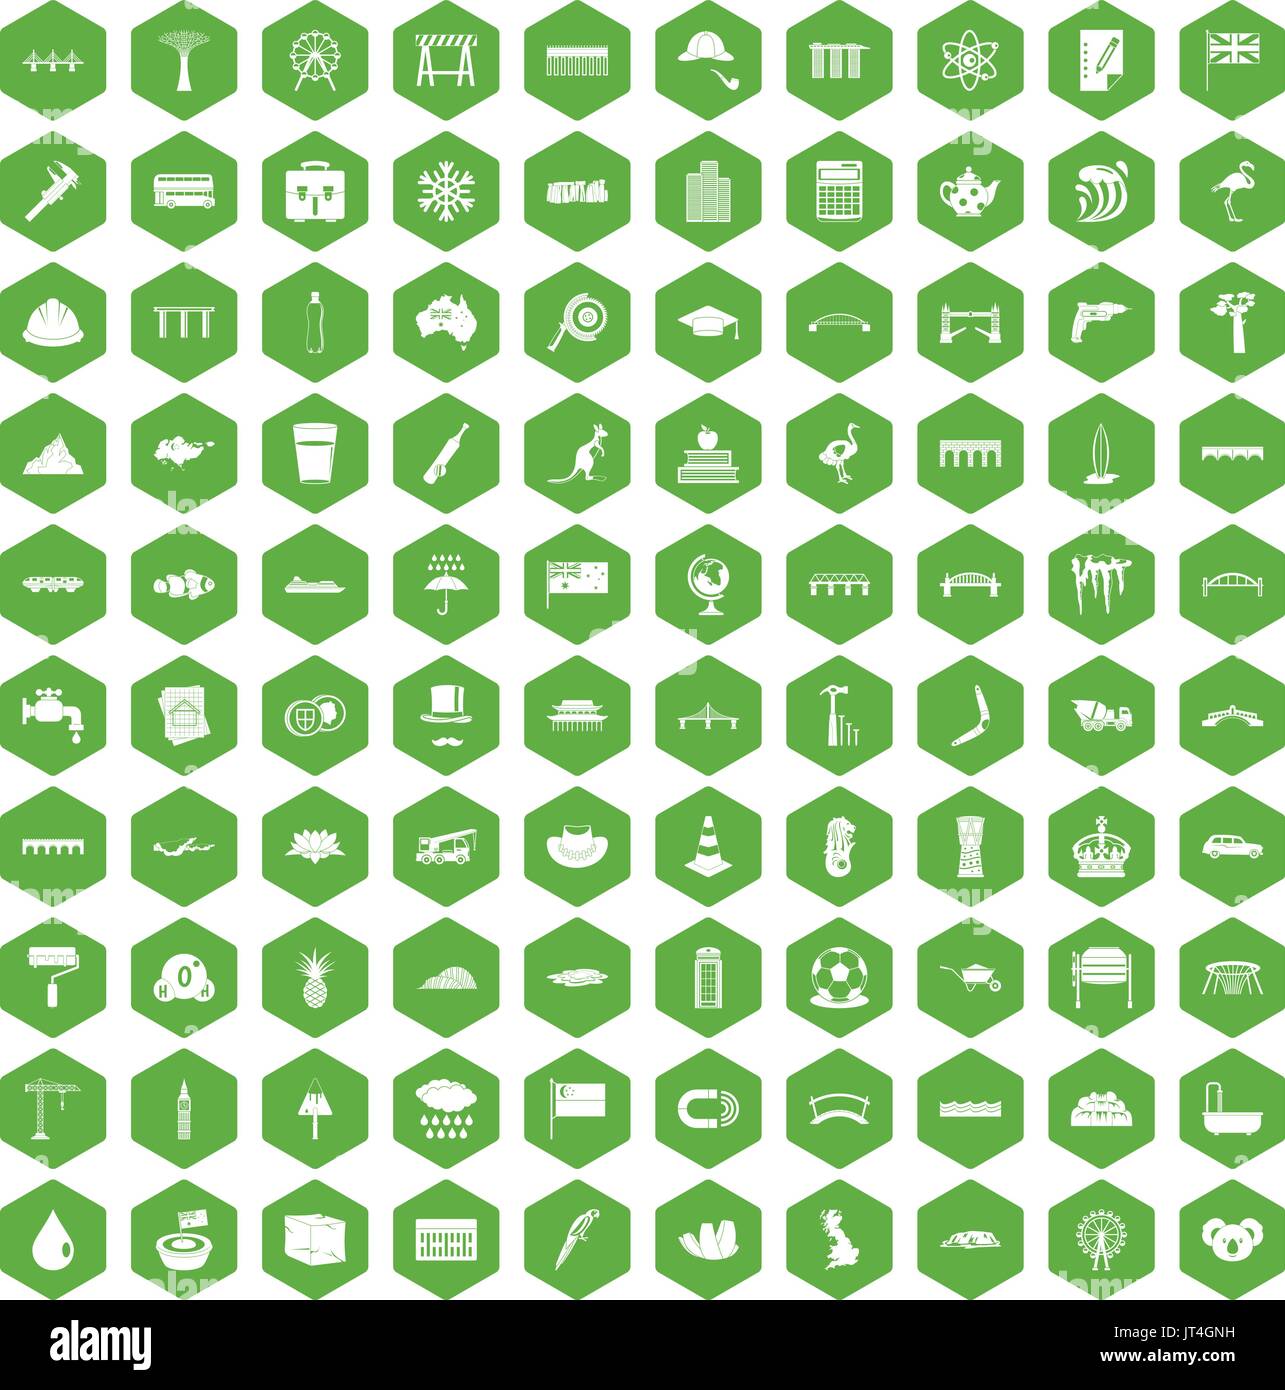 100 bridge icons hexagon green Stock Vector